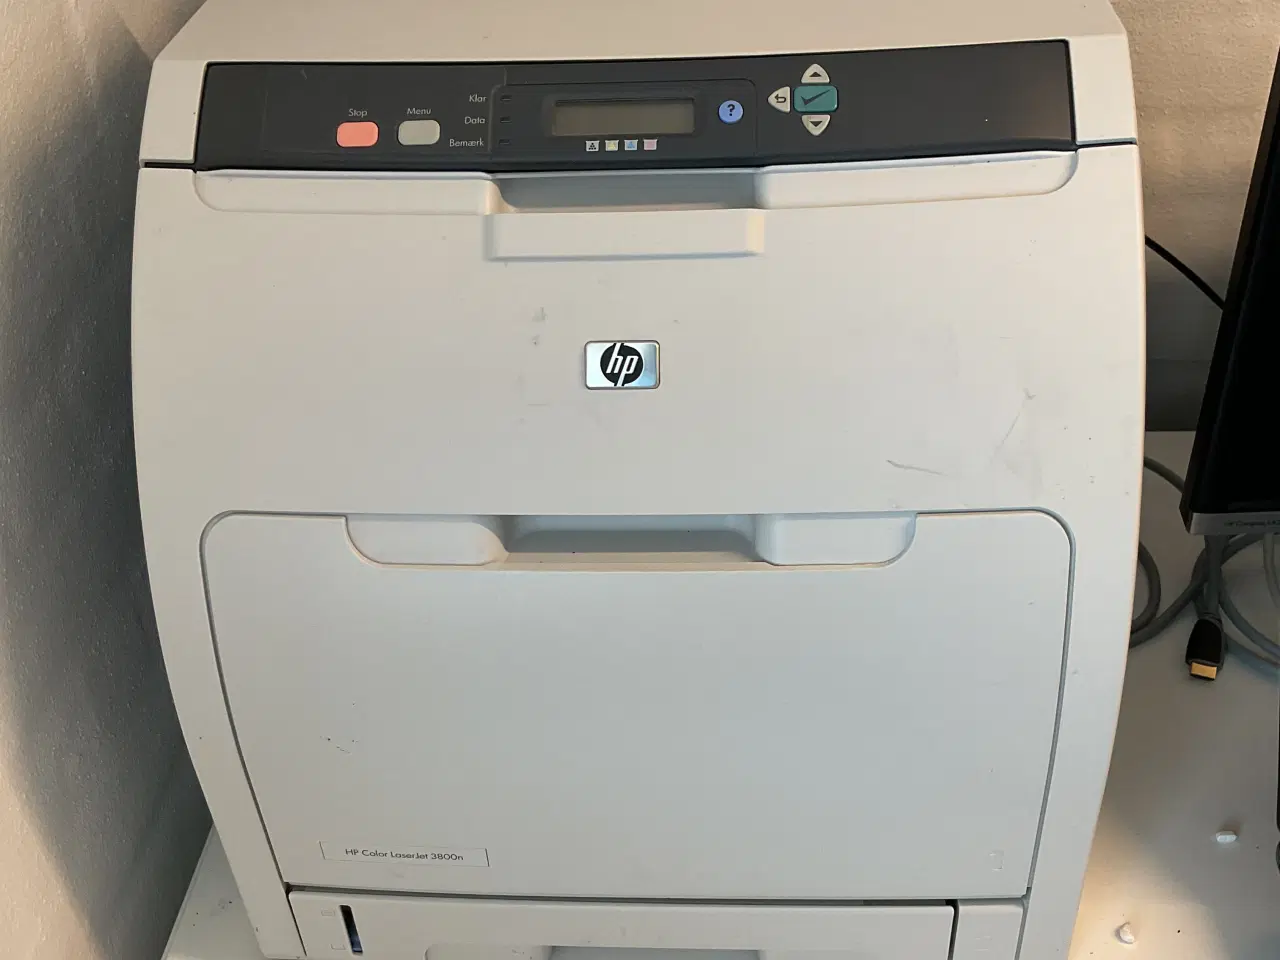 Billede 1 - Defekt HP Color Laserjet 3800n